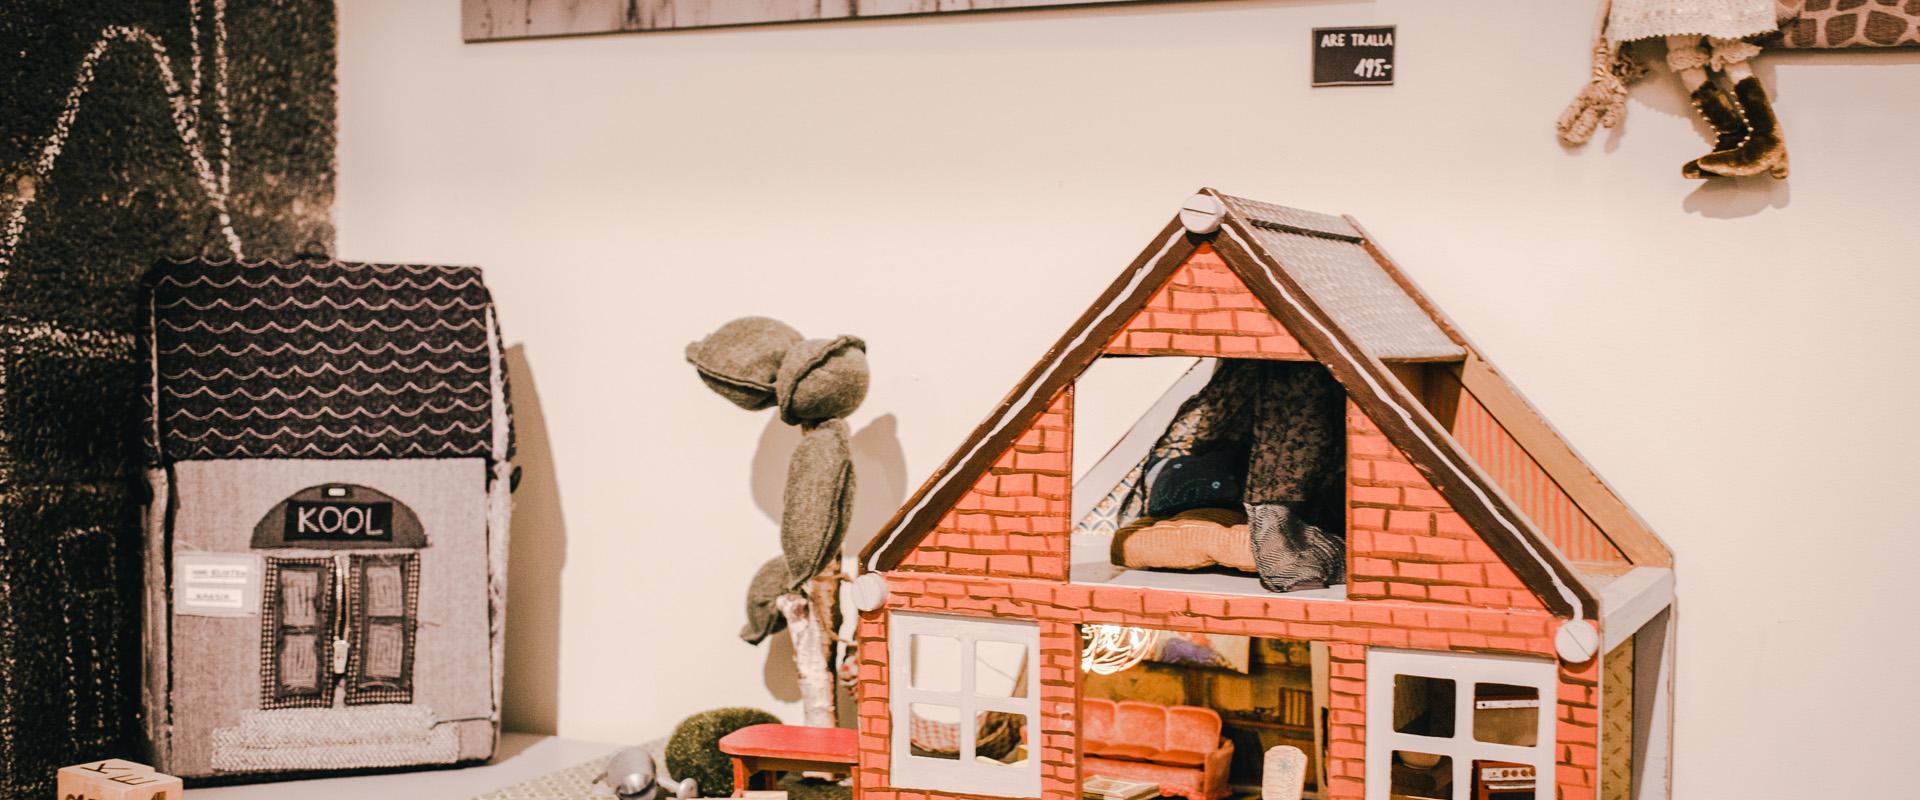 Studiomyymälä Karud ja Pojadin leikkihuone: pieni karhunpesä ja tekstiilinen koulurakennus, pienet karhut ja nukke. Seinällä mustavalkoinen kuva, jossa paljas puu ja Emajoki.